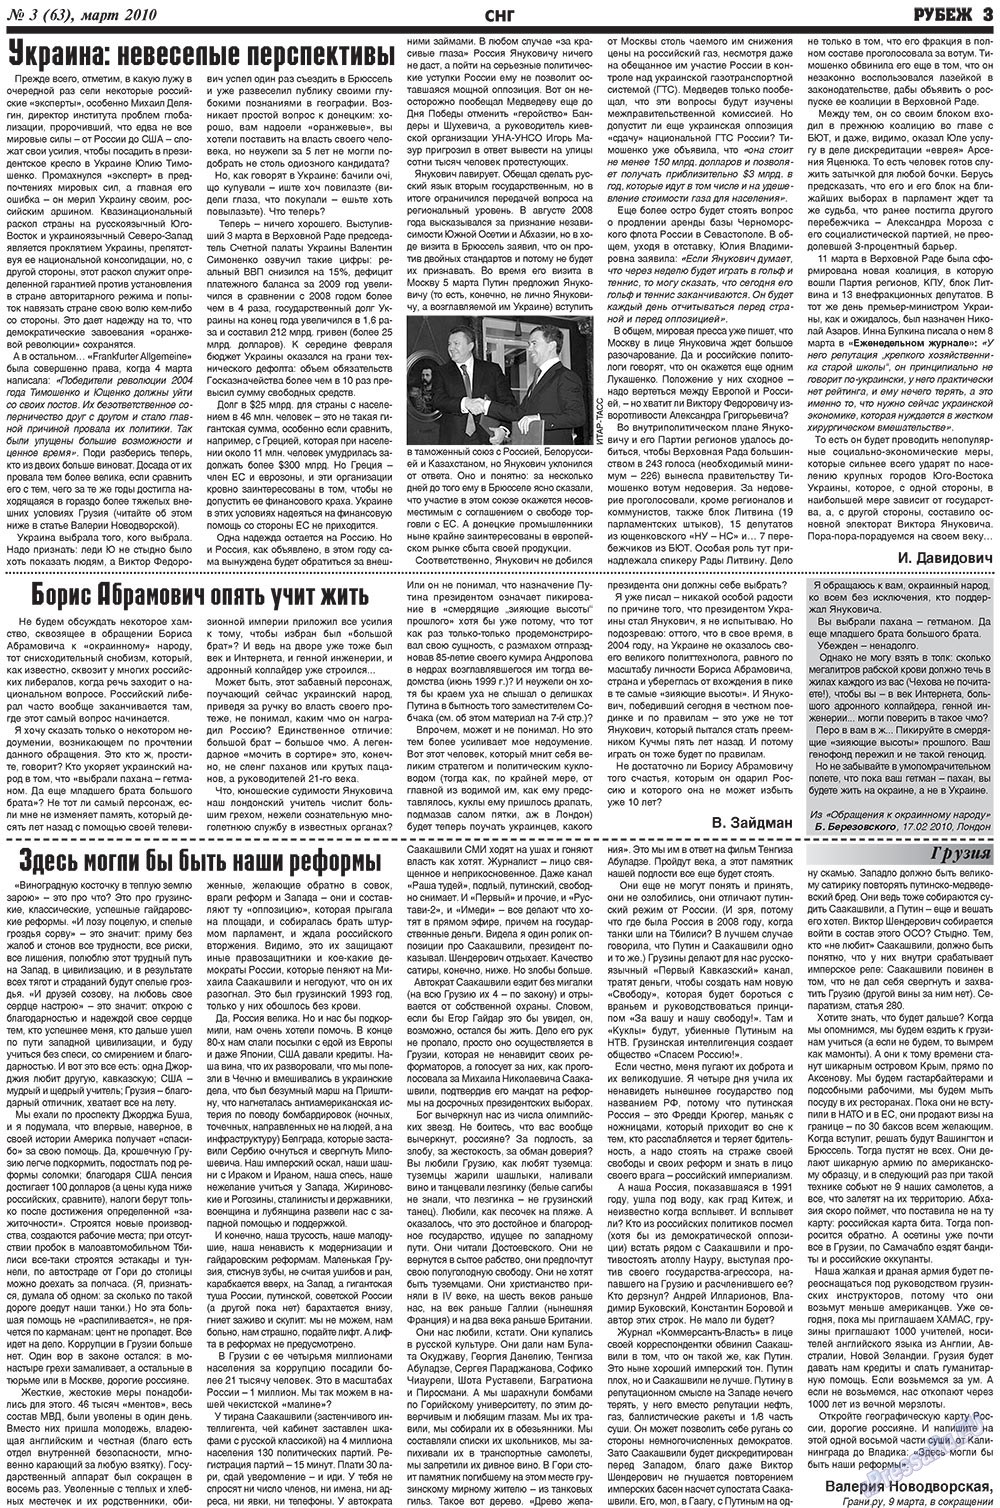 Рубеж (газета). 2010 год, номер 3, стр. 3